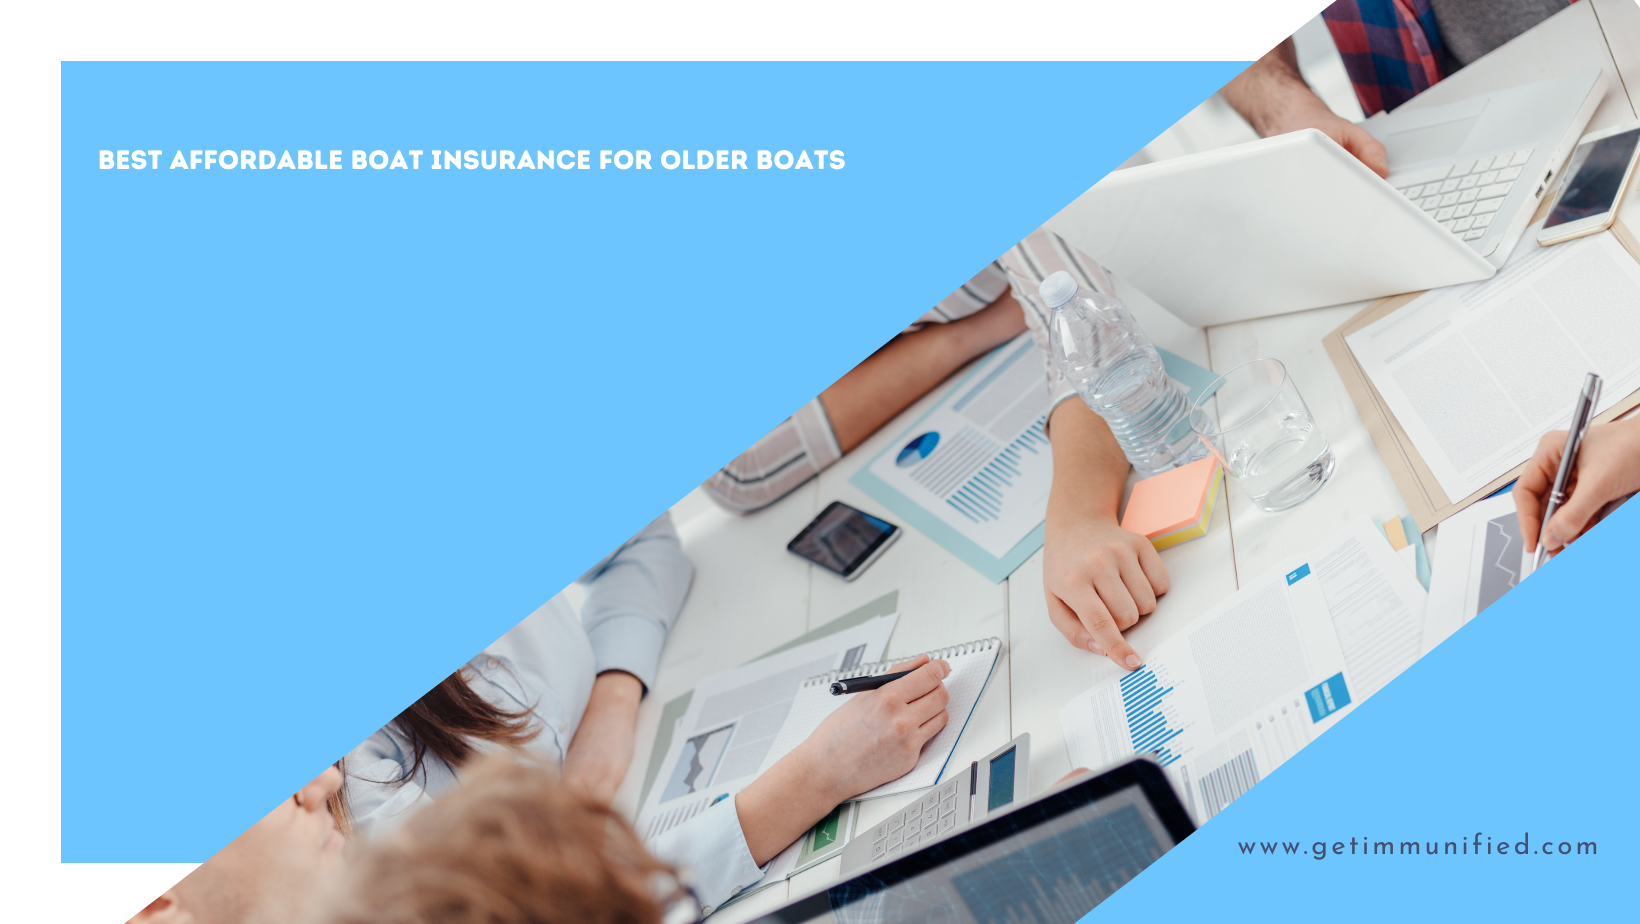 Best Affordable Boat Insurance For Older Boats